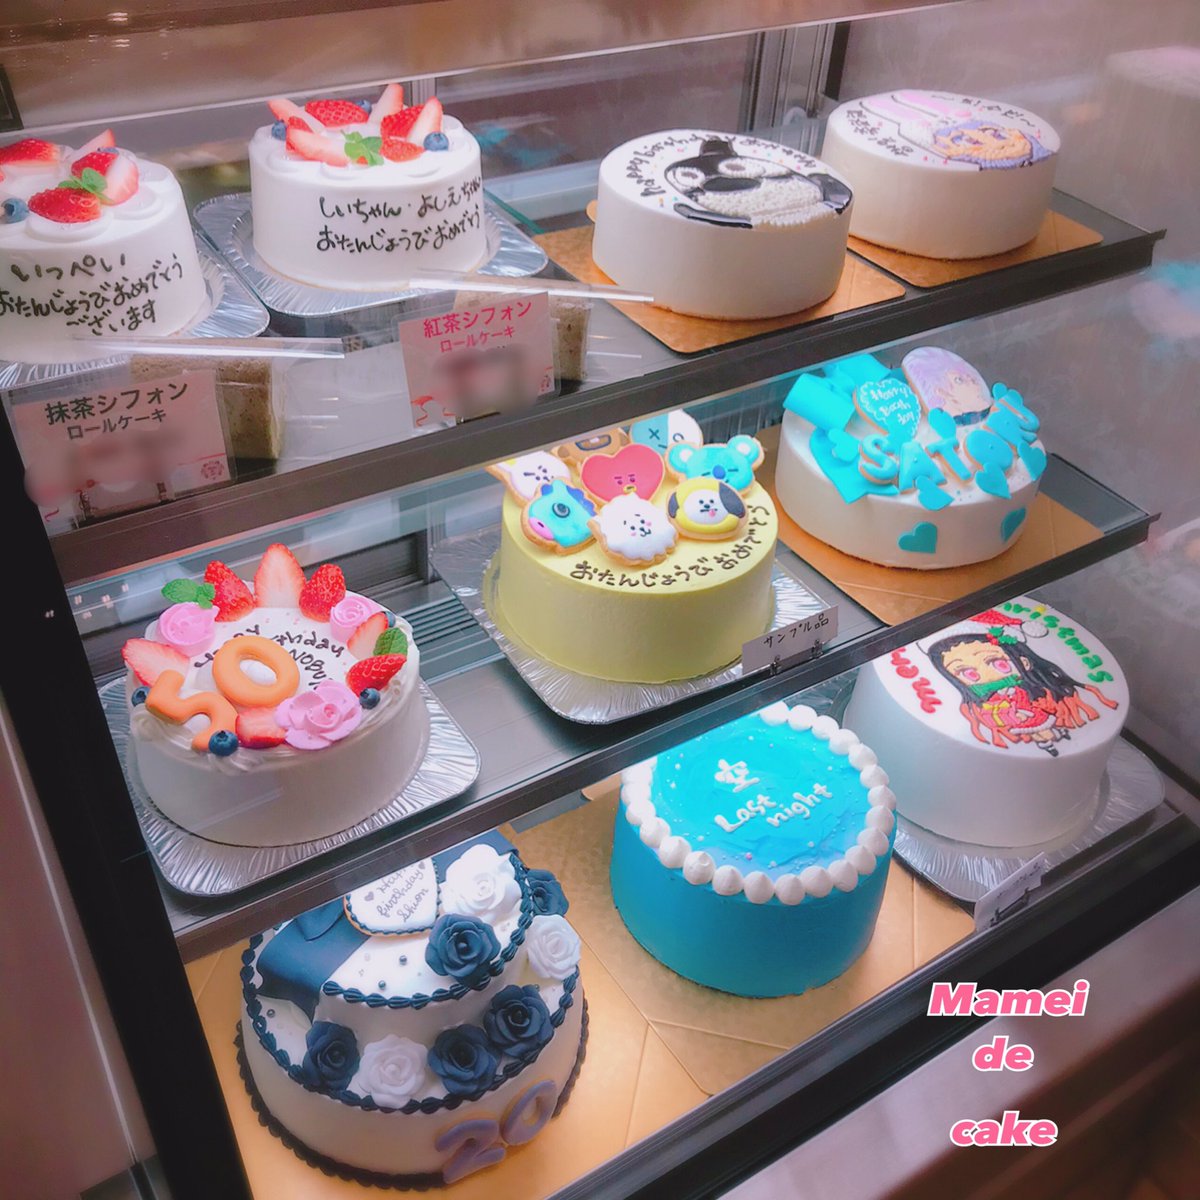 Mamei De Cake マーメイドケーキ Mameidecake Twitter